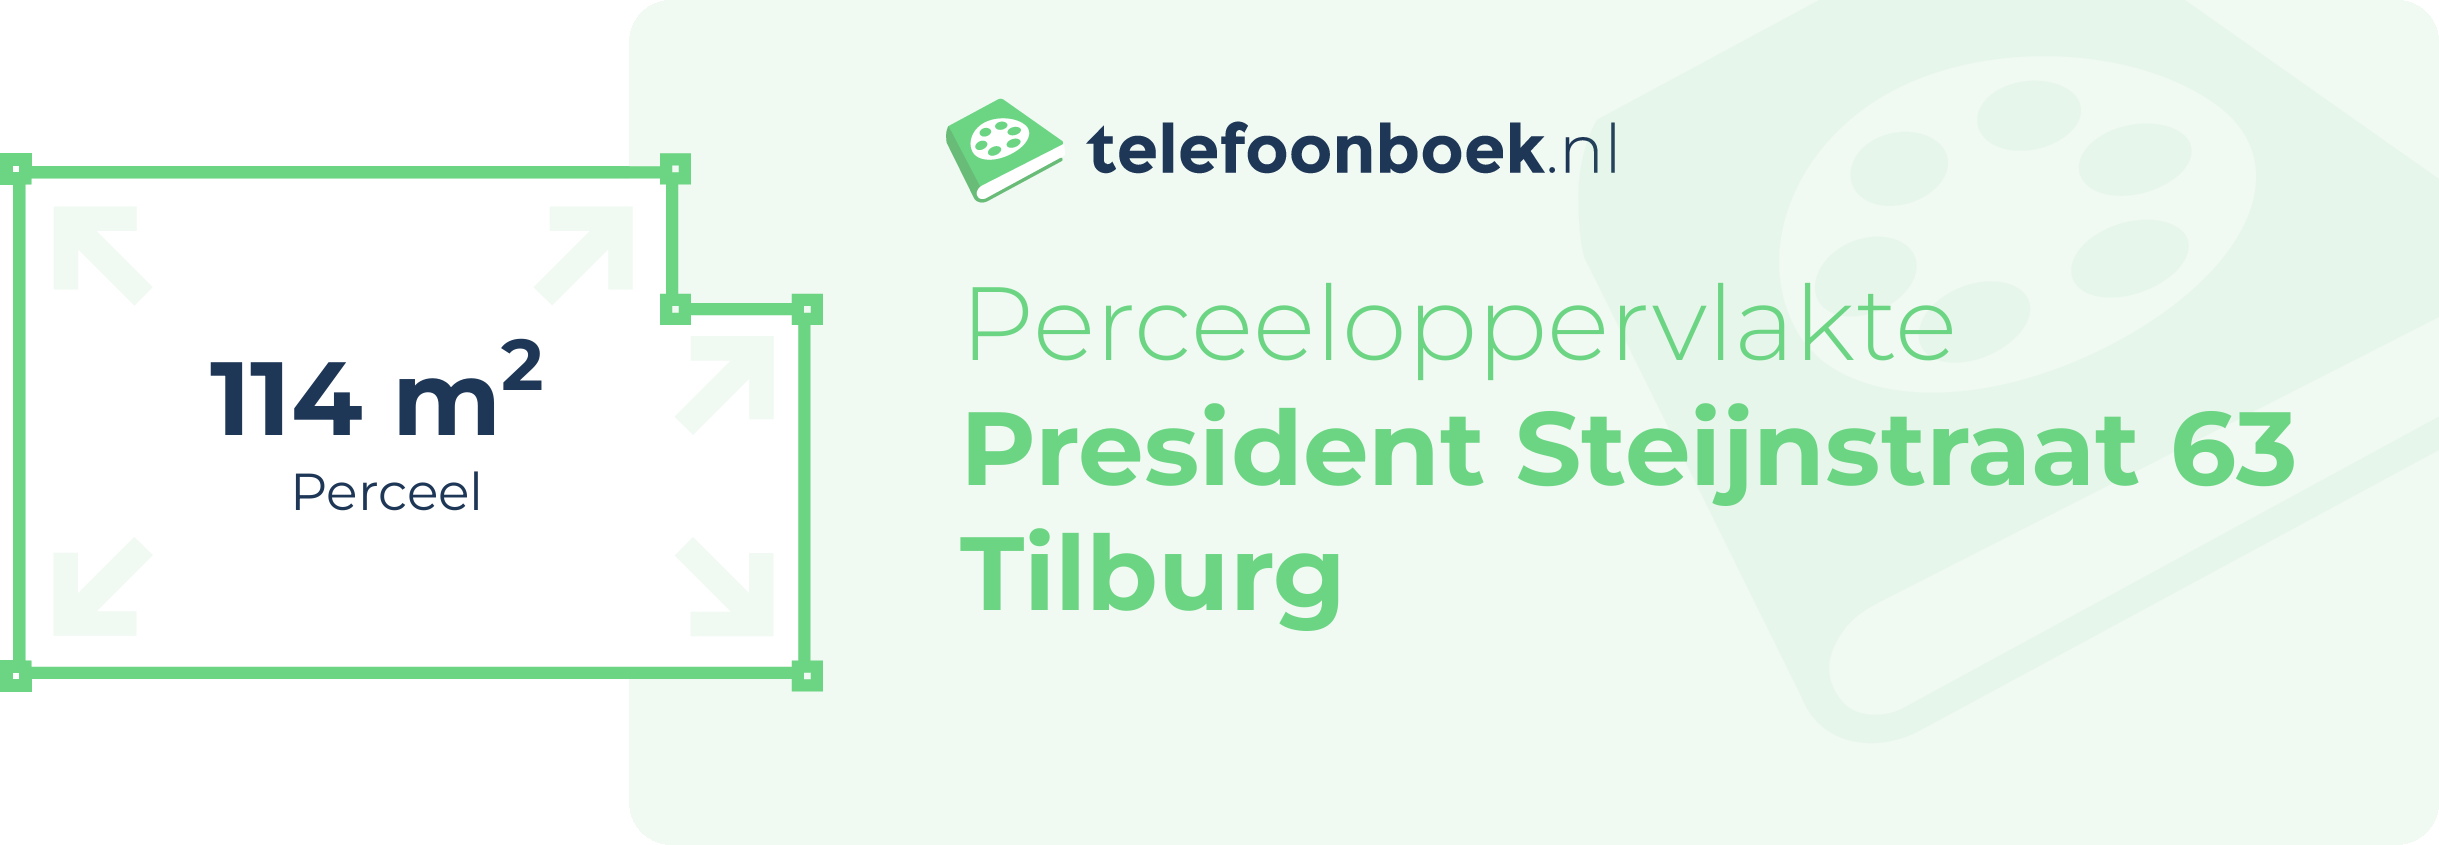 Perceeloppervlakte President Steijnstraat 63 Tilburg